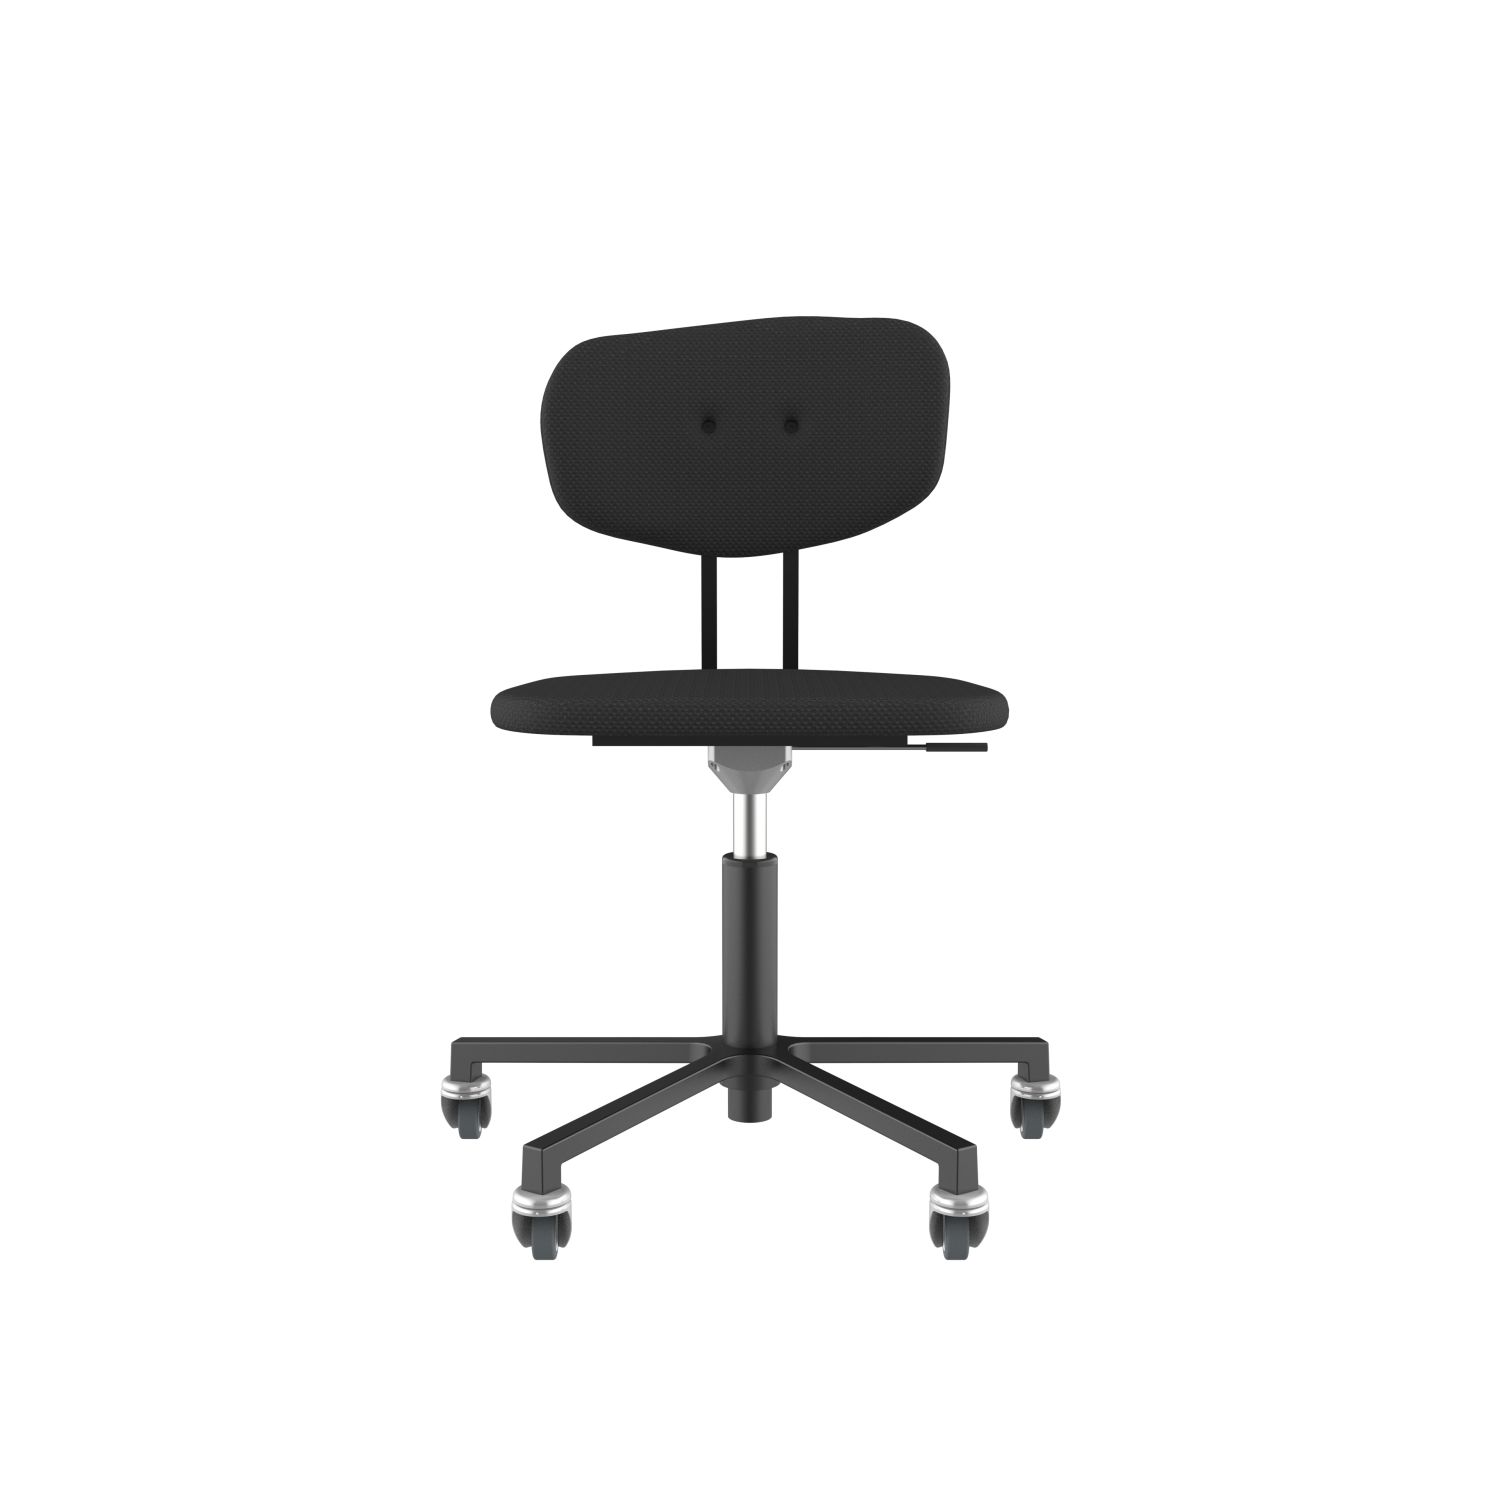 lensvelt maarten baas office chair without armrests backrest c havana black 090 black ral9005 soft wheels